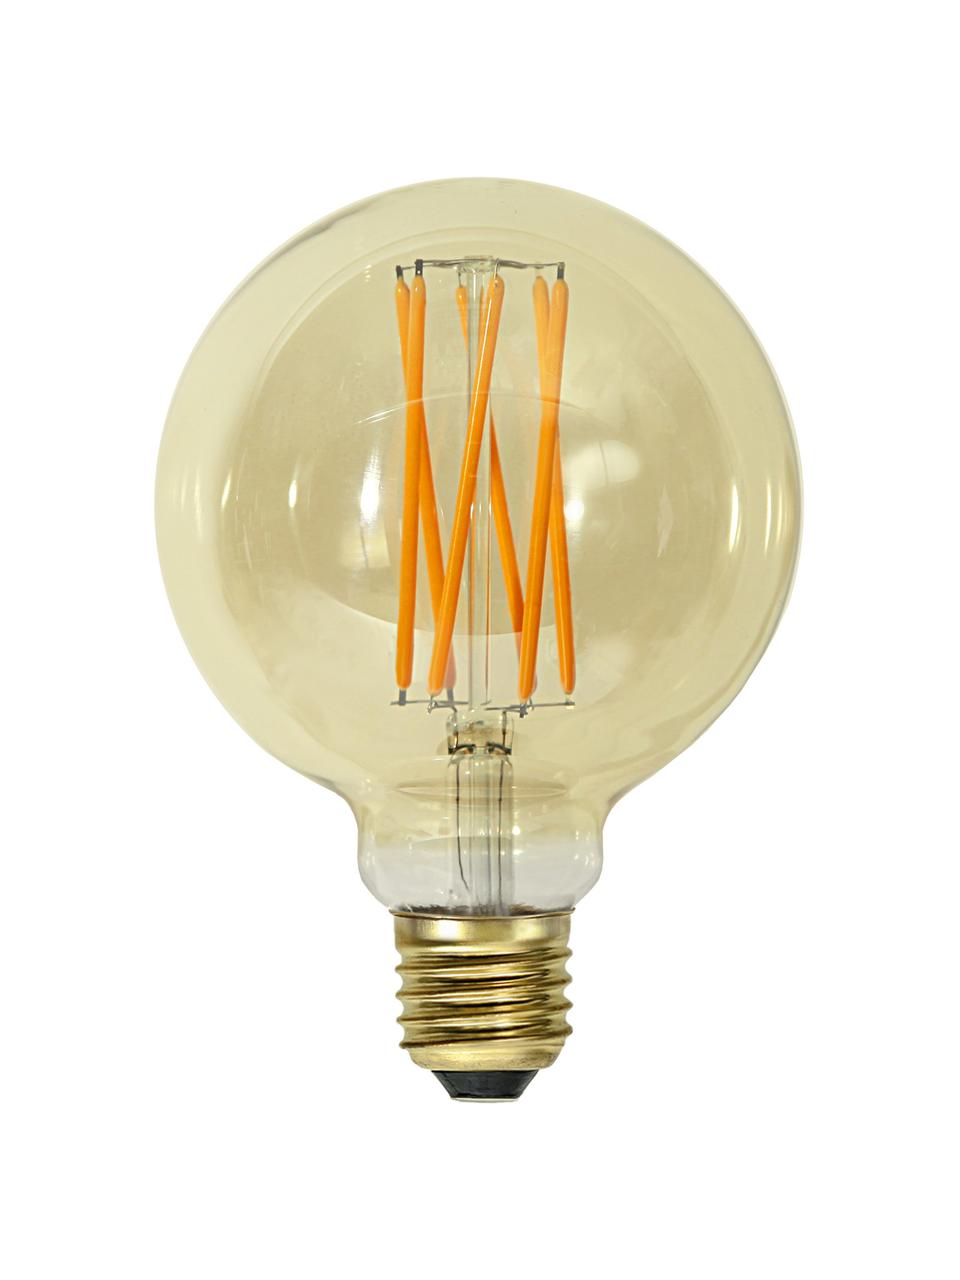 Ampoule E27 - 240 lm, blanc chaud, intensité variable, 1 pièce, Ambré, transparent